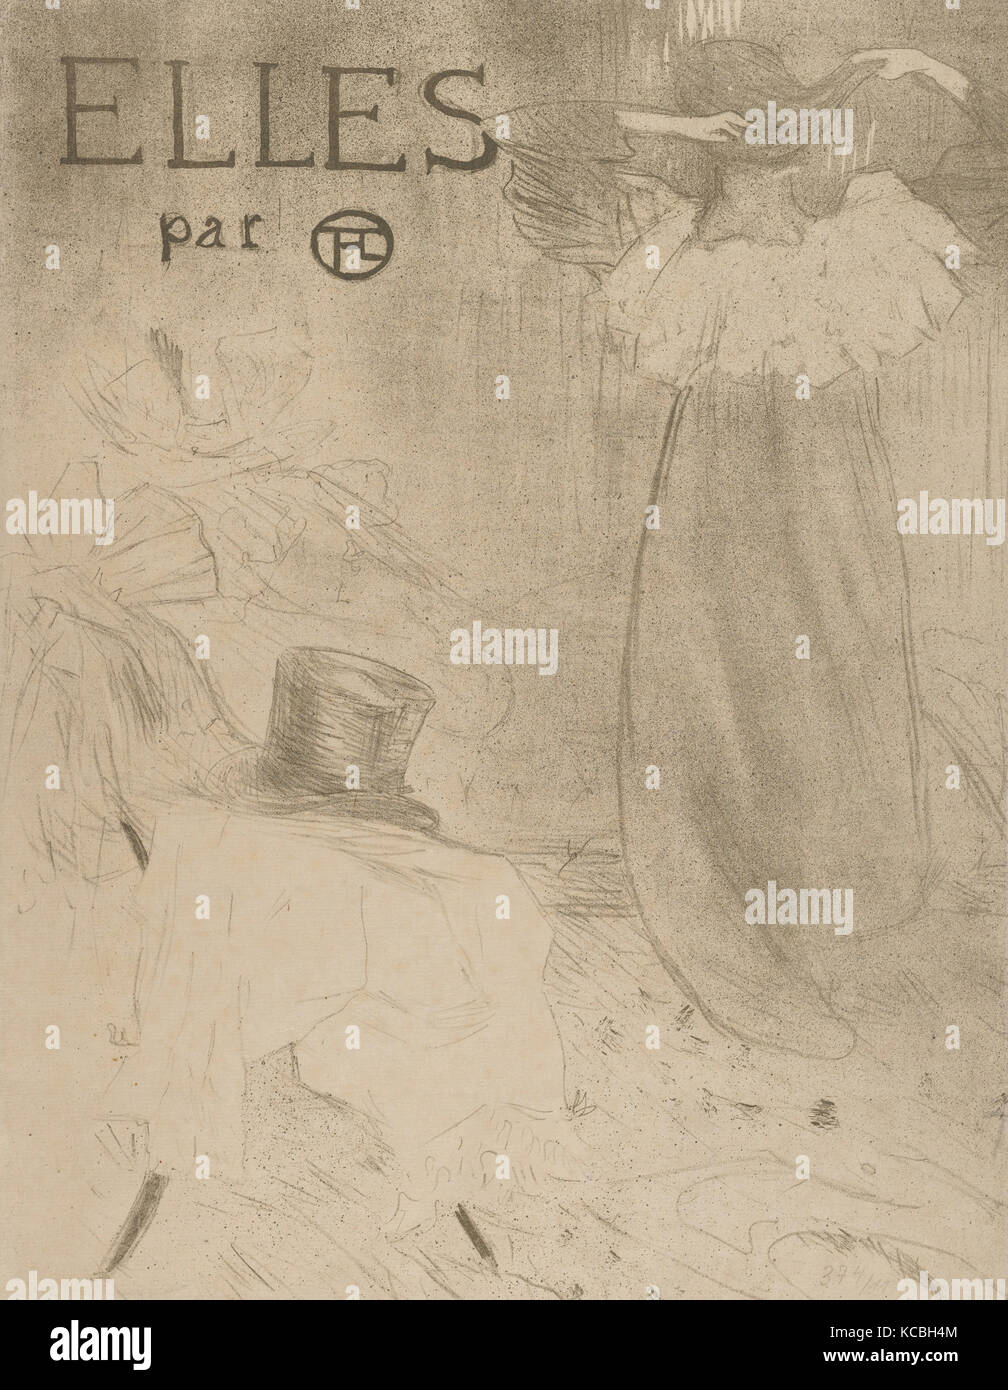 Elles (portfolio cover), Henri de Toulouse-Lautrec, 1896 Stock Photo